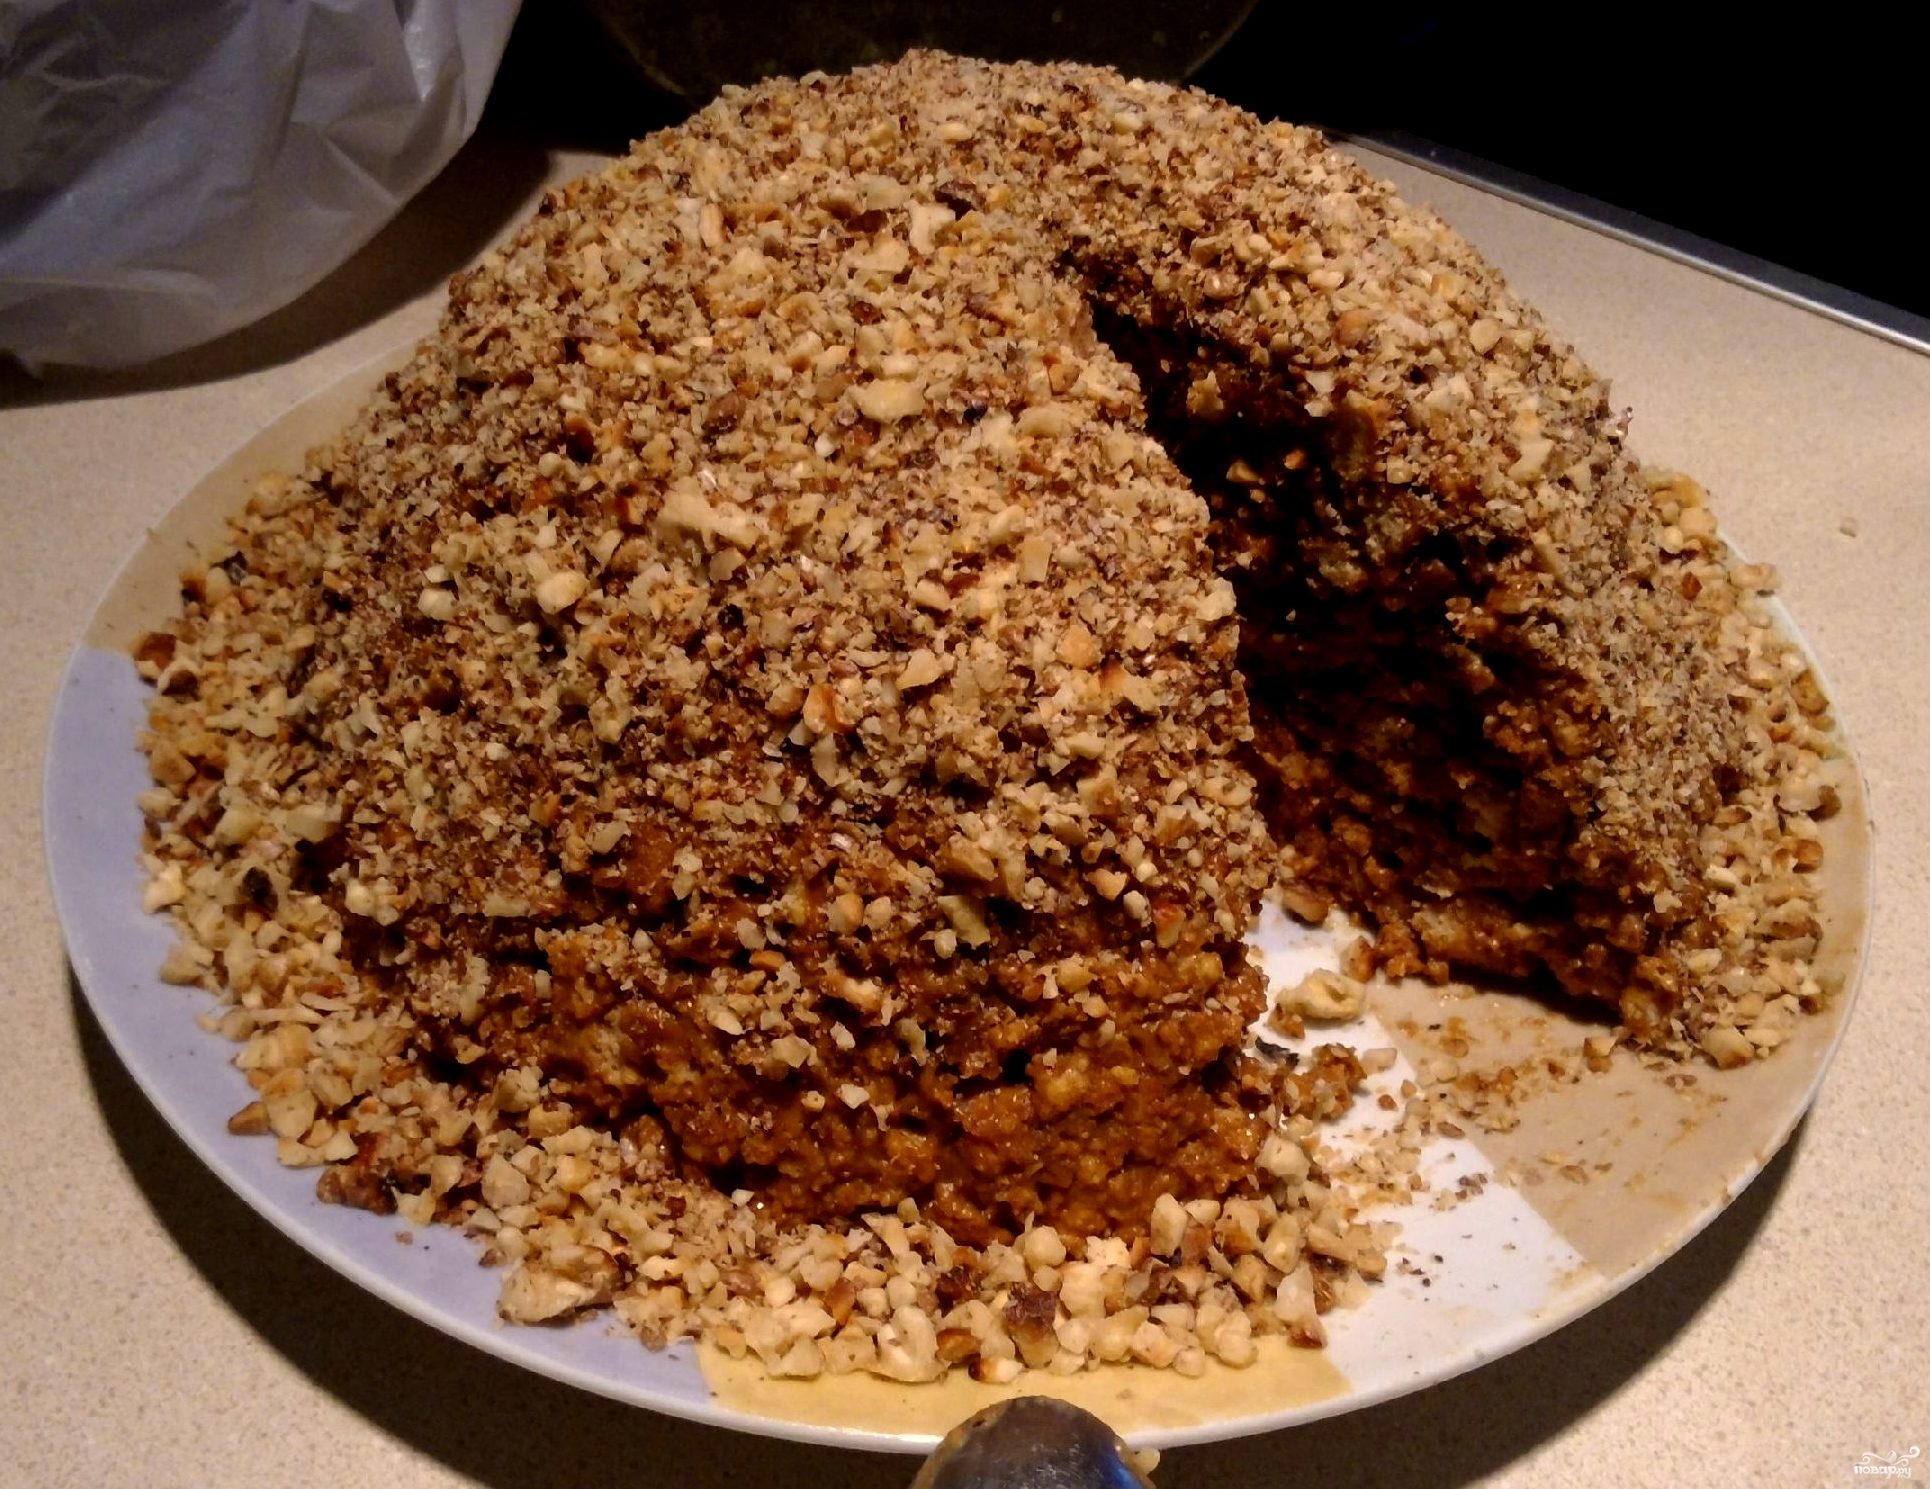 Ленивый муравейник из печенья и вареной сгущенки рецепт с фото